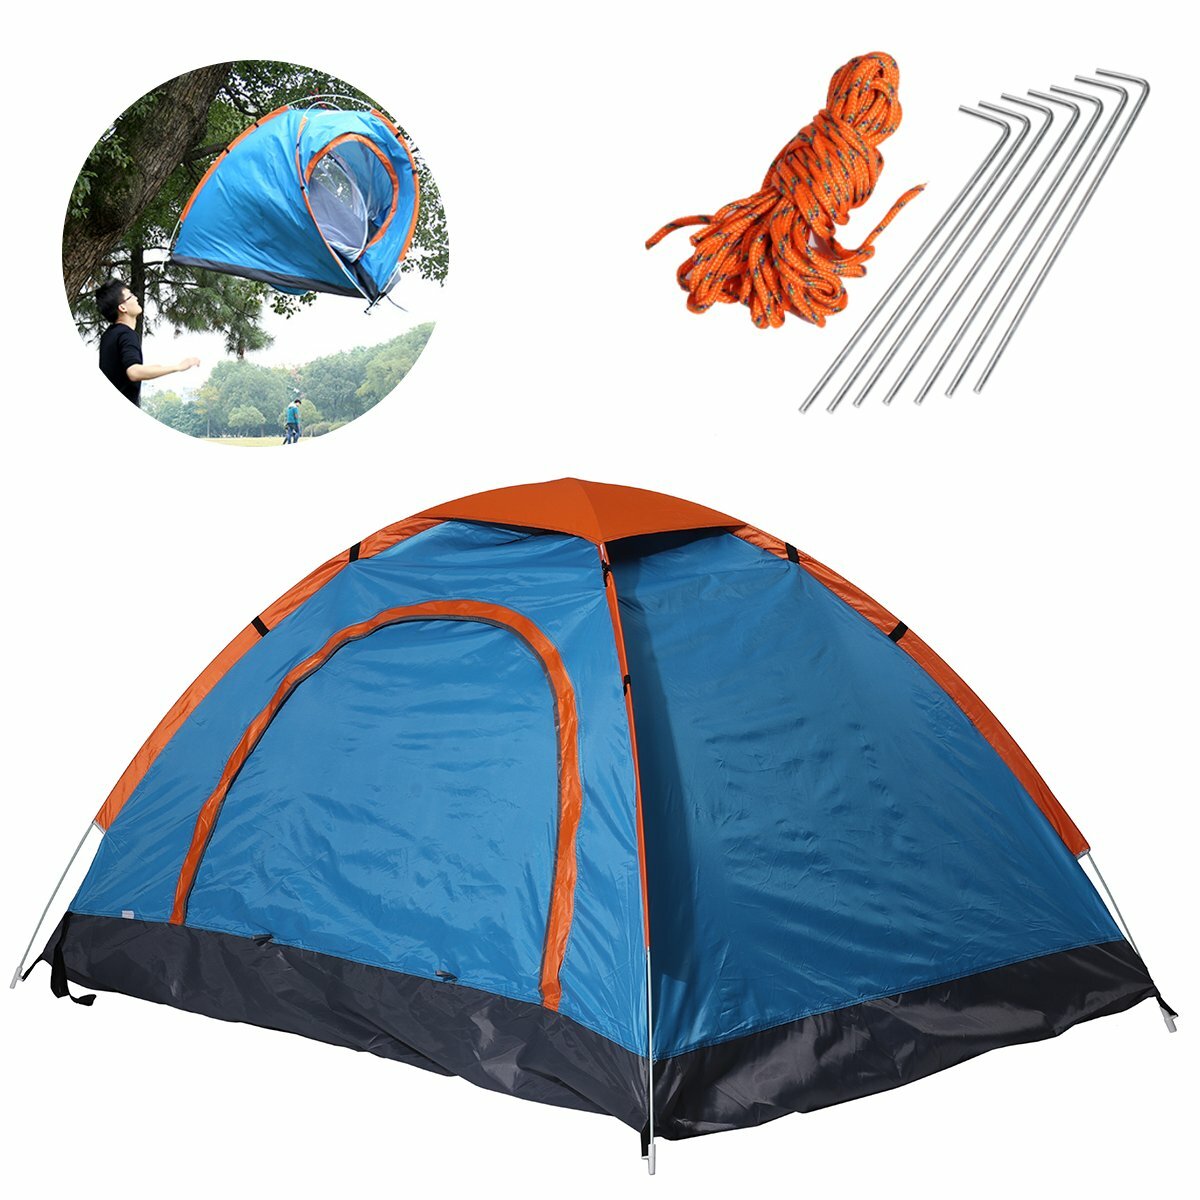 Összecsukható vízálló ultrakönnyű sátor 2 személy számára napvédővel, ideális utazáshoz és túrázáshoz